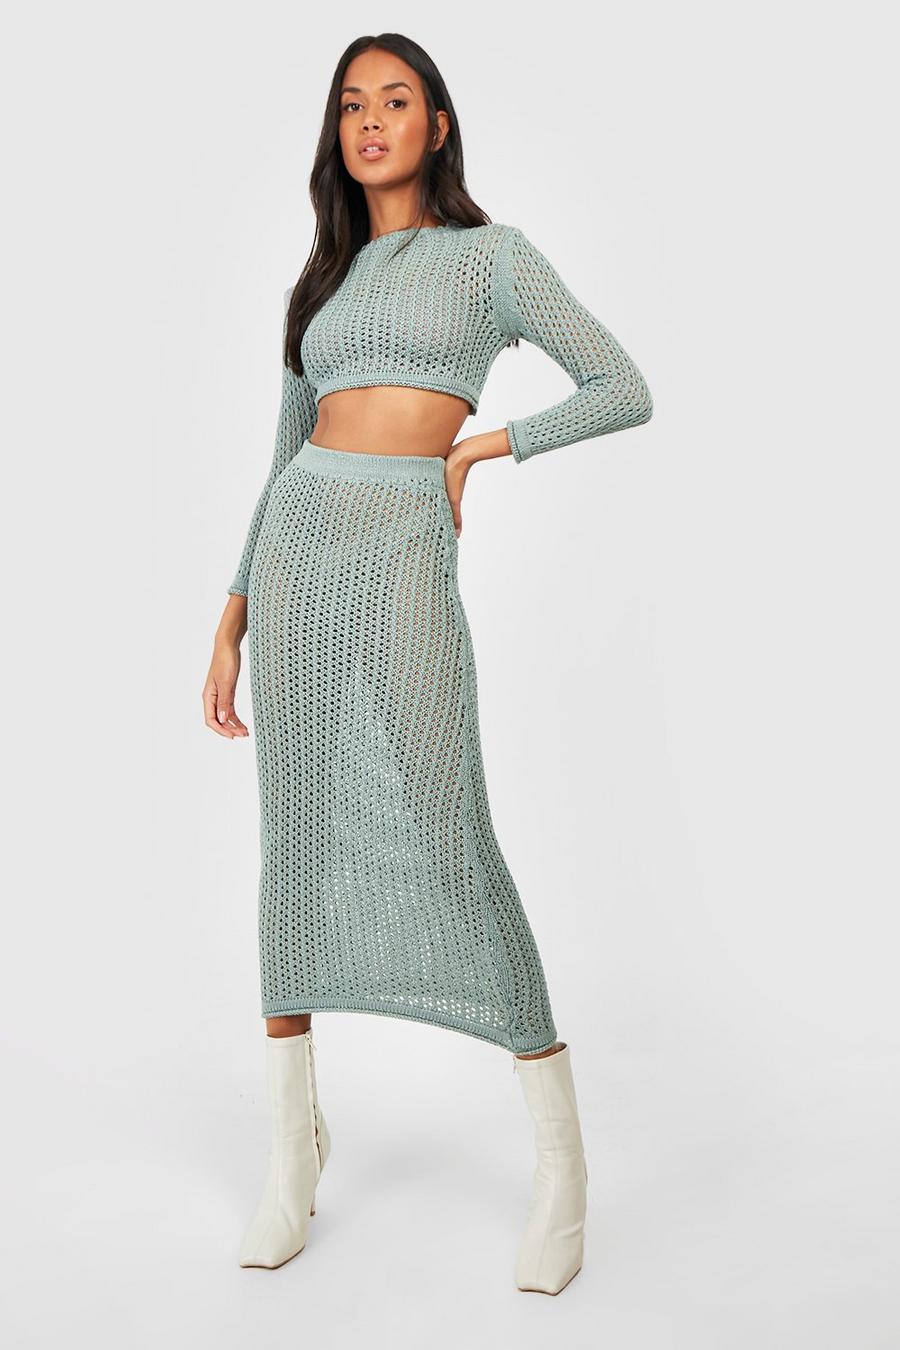 Teal vert Crochet Maxi Skirt Co-ord